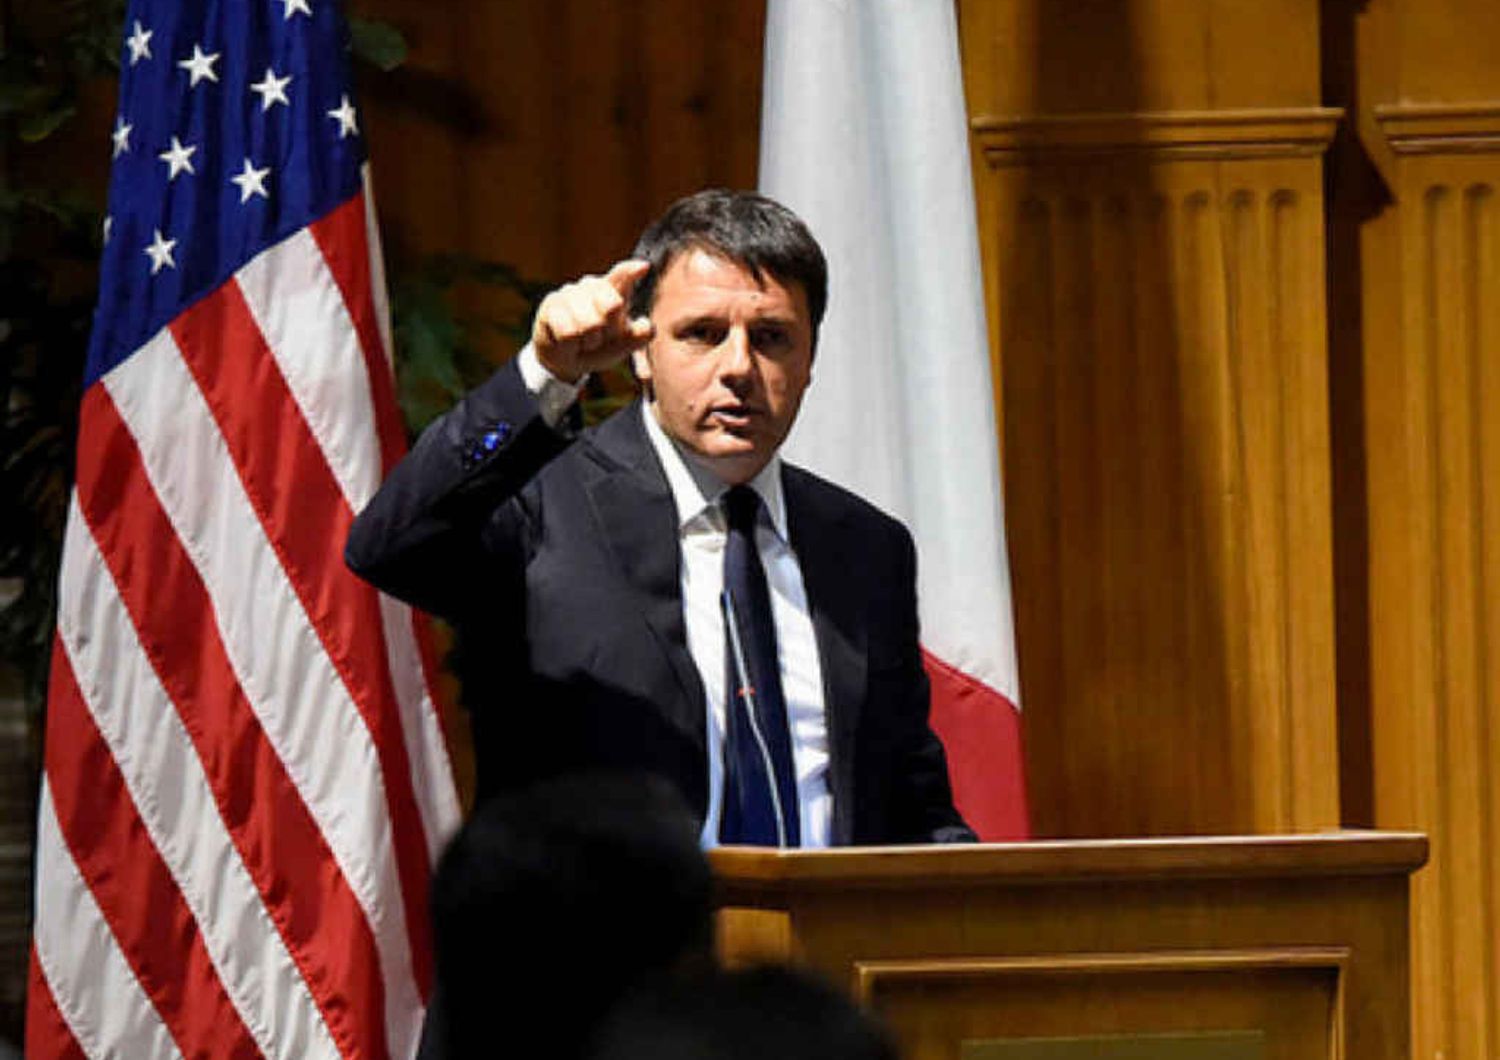 Lavoro: Renzi, "riforma non rinviabile". Grillo a minoranza Pd, "mandiamolo a casa"